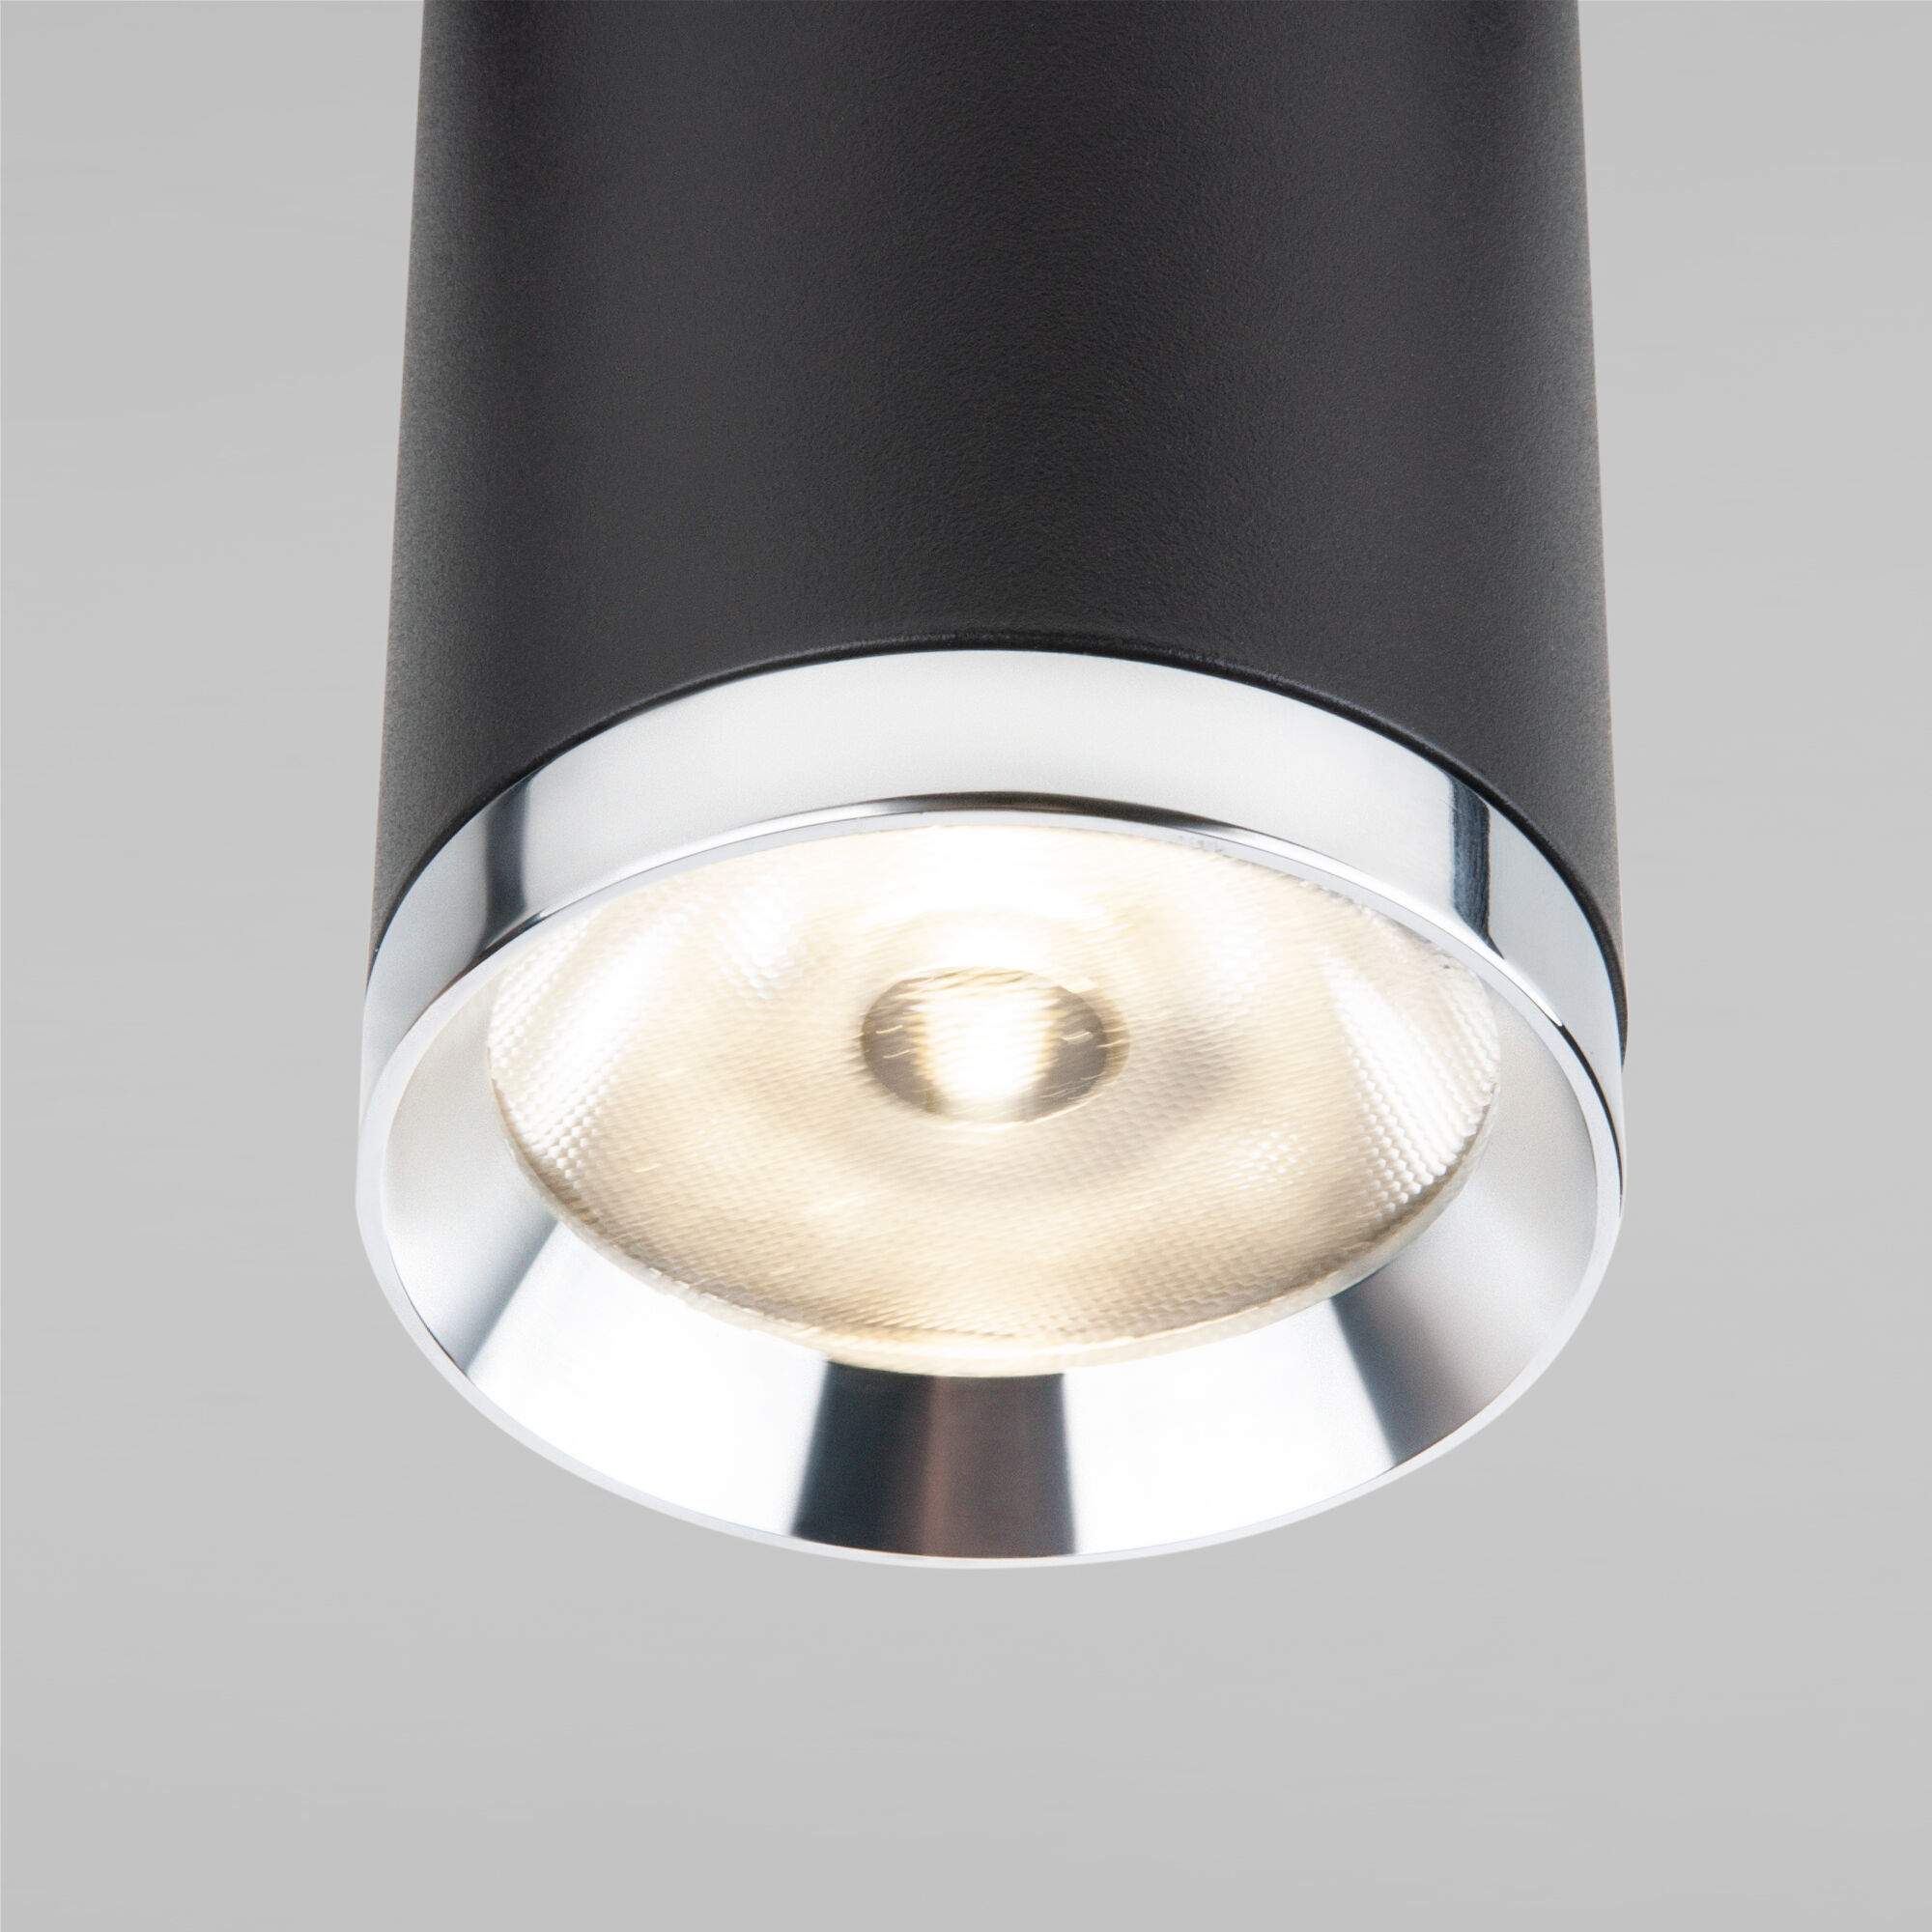 Slim Magnetic R06 Трековый светильник 10W 4200K Ringe черный/серебро 85506/01